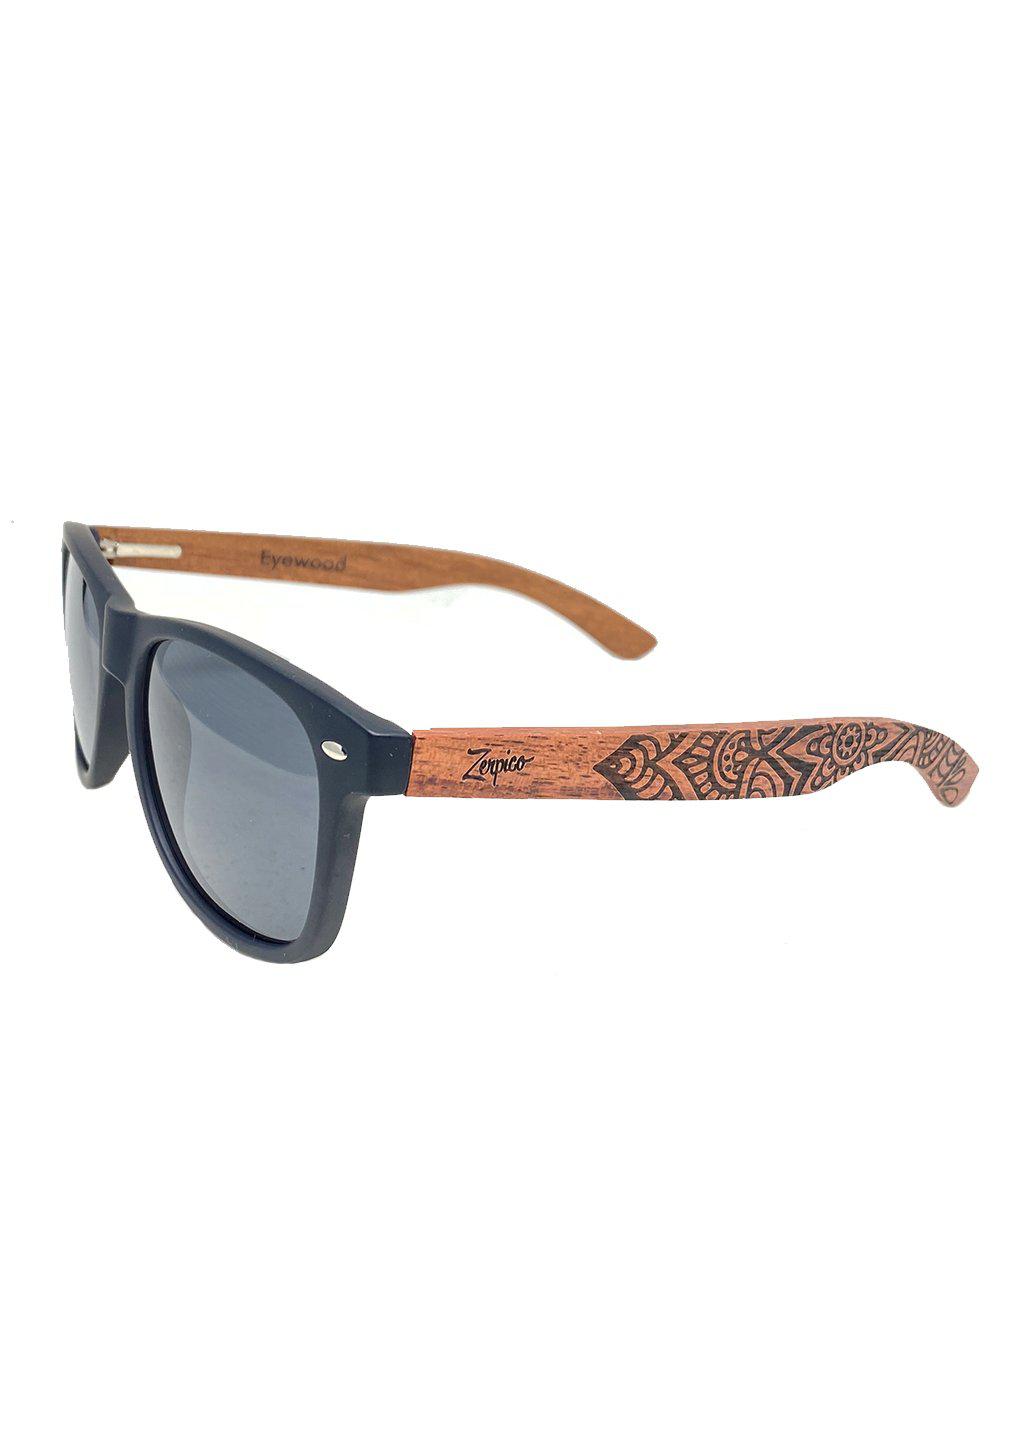 Engraved wood sunglasses from Zerpico. Eyewood Mandala is handmade with mandala pattern.